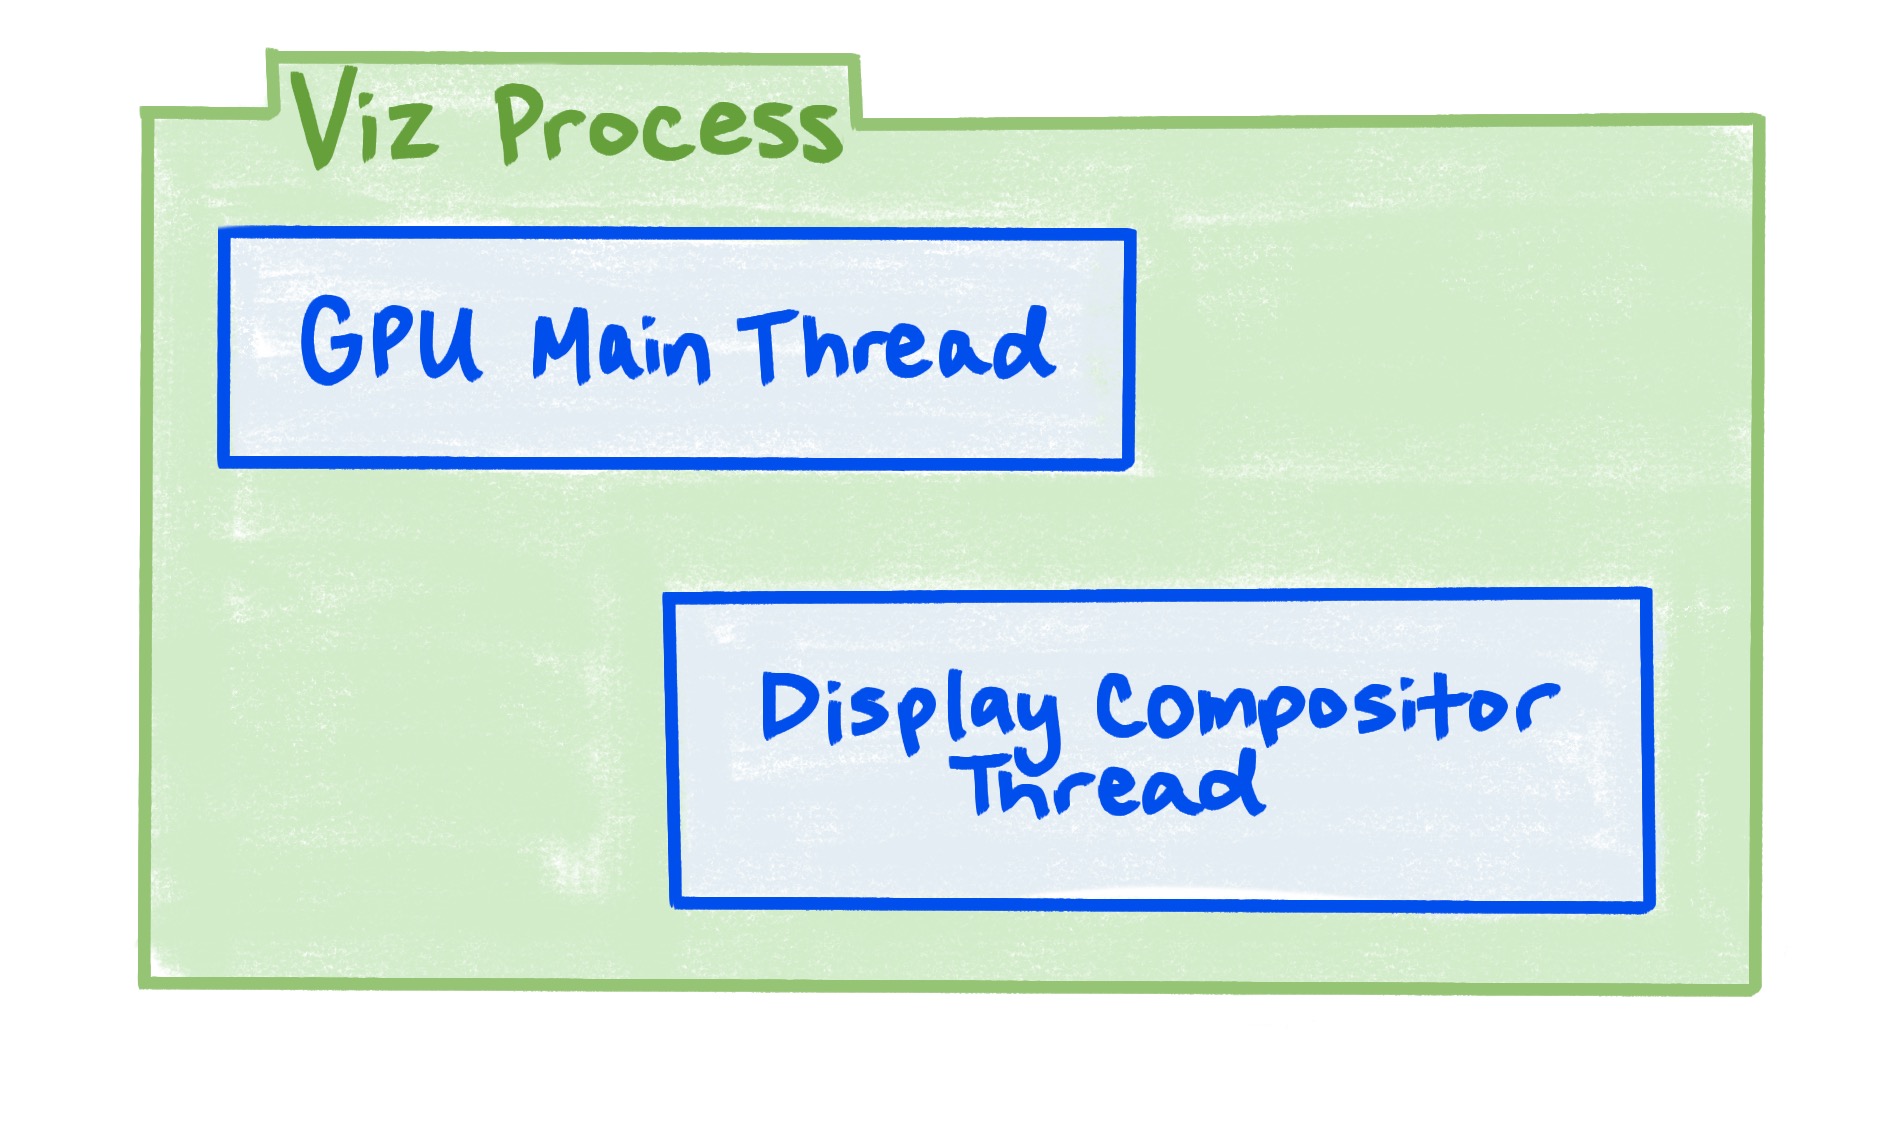 O processo do Viz inclui a linha de execução principal da GPU e a linha de execução do compositor de exibição.